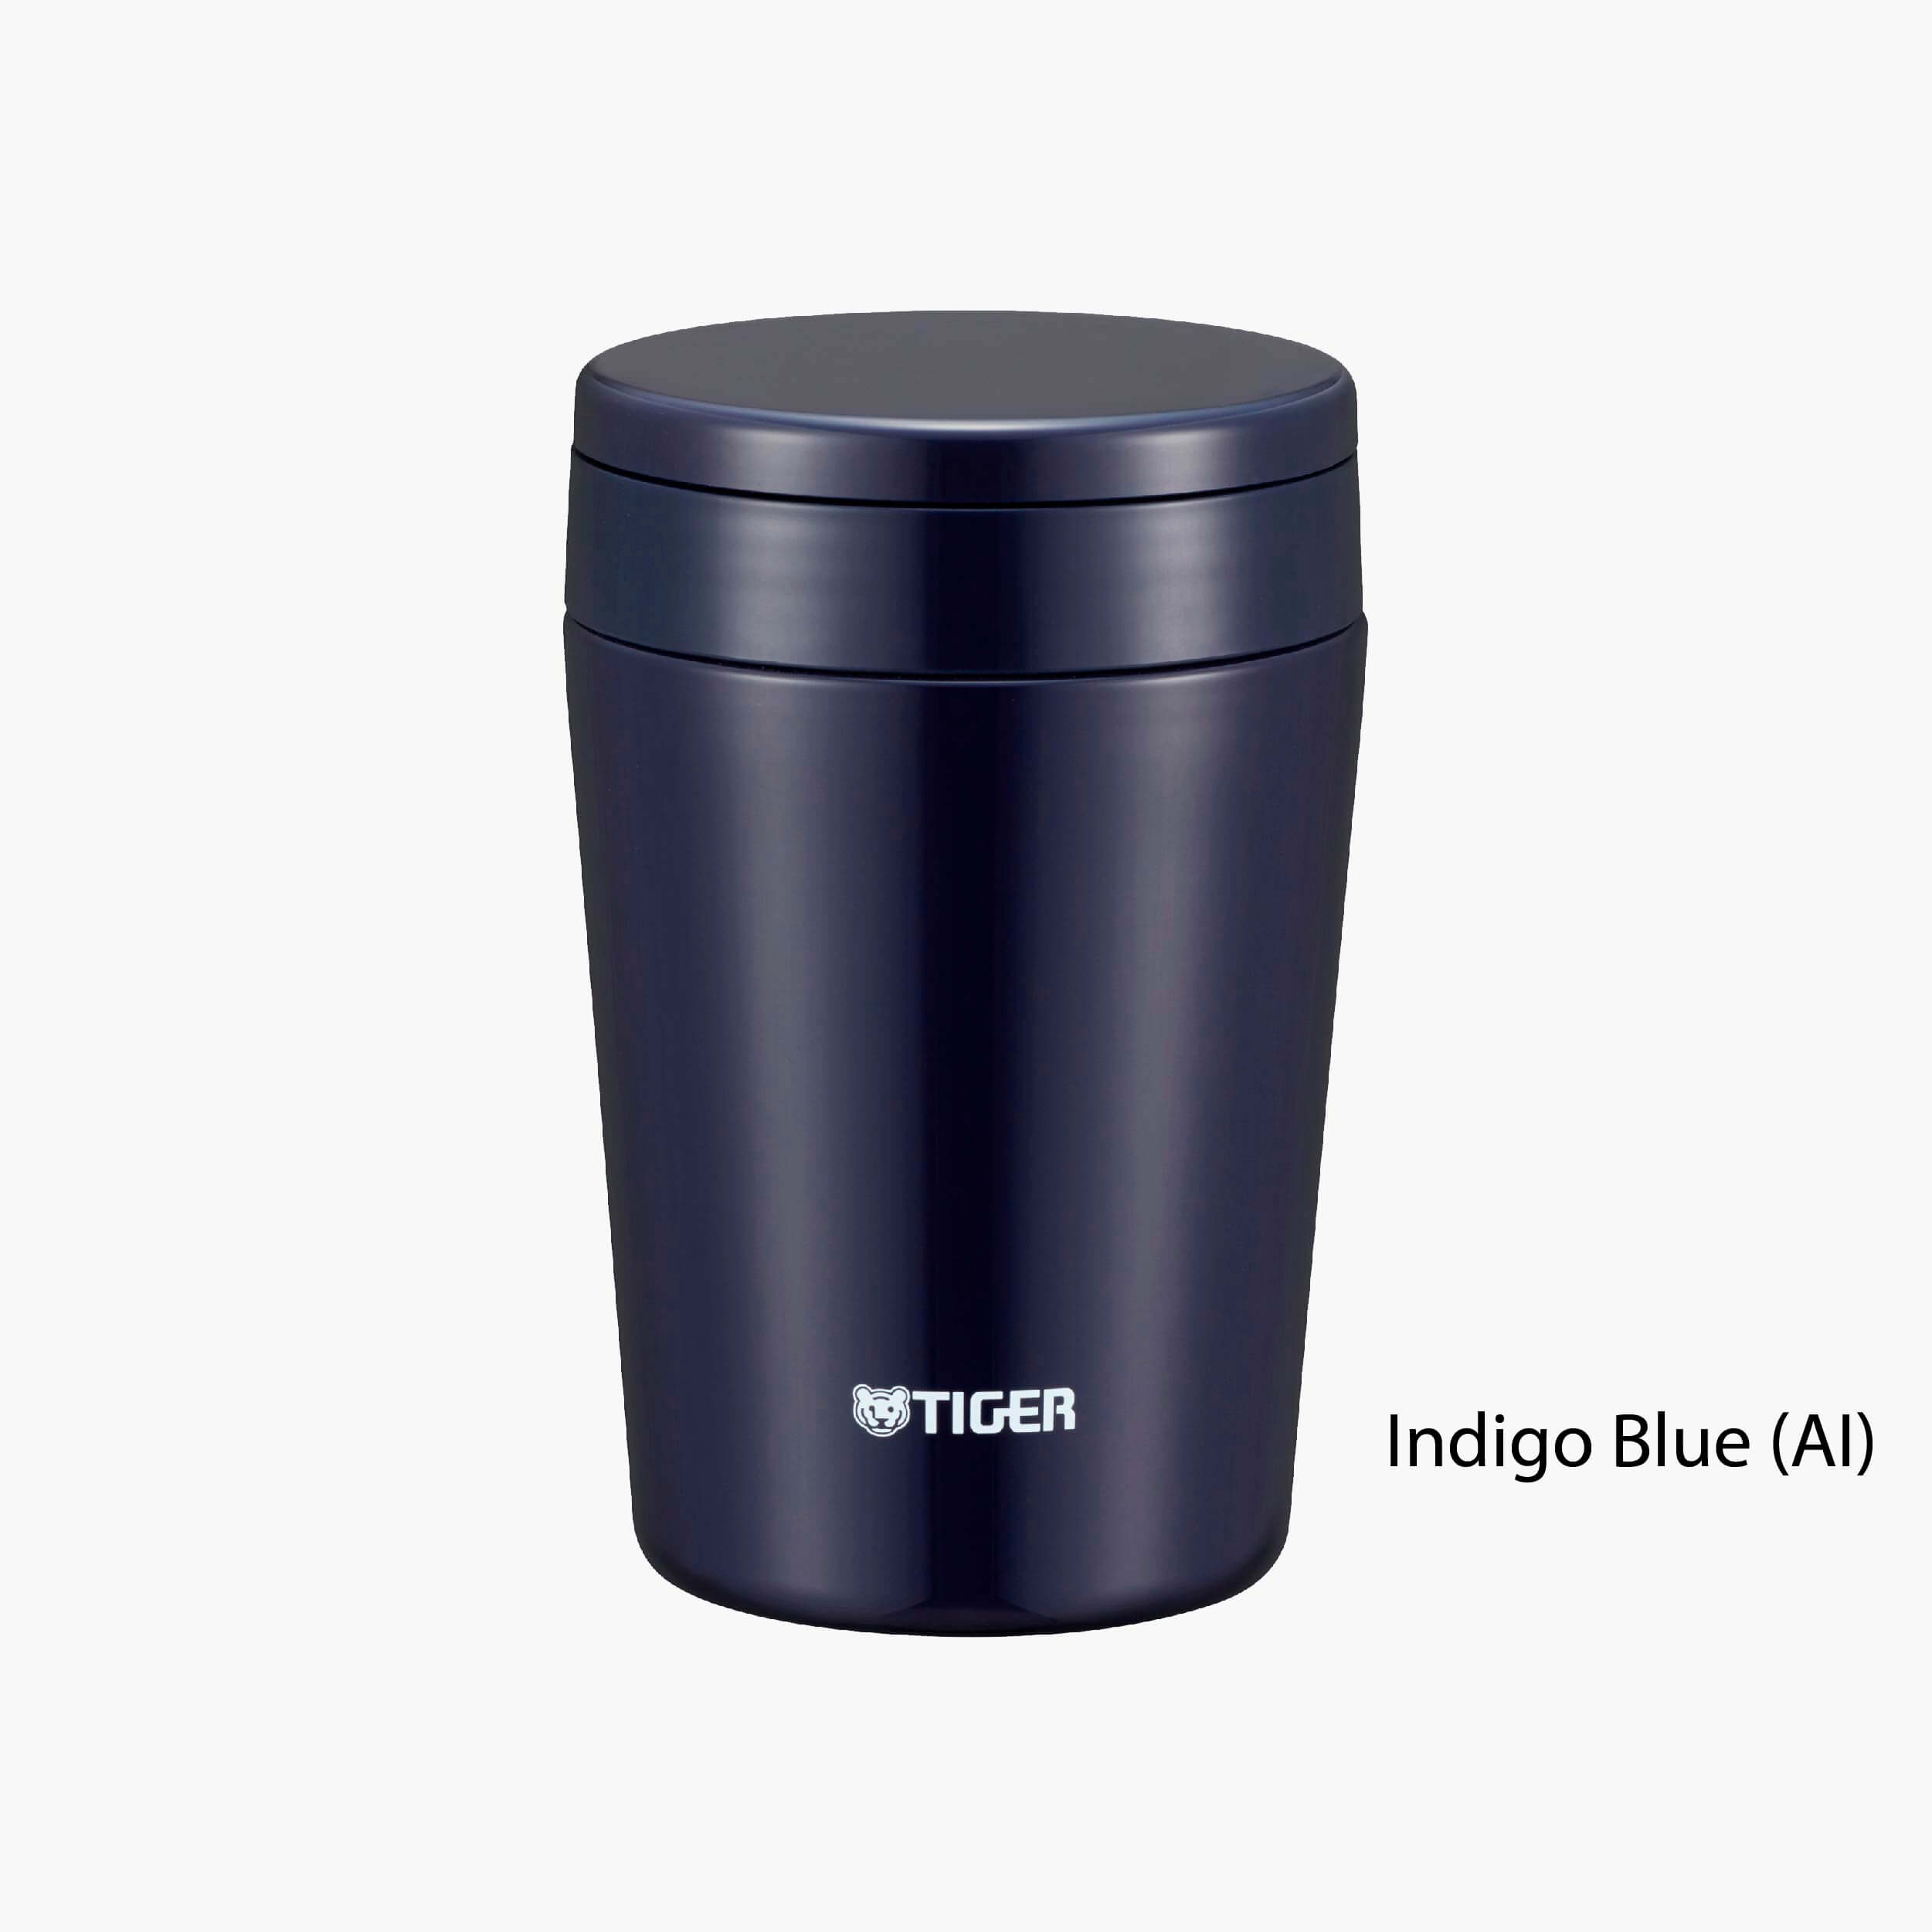 Indigo Blue (AI)